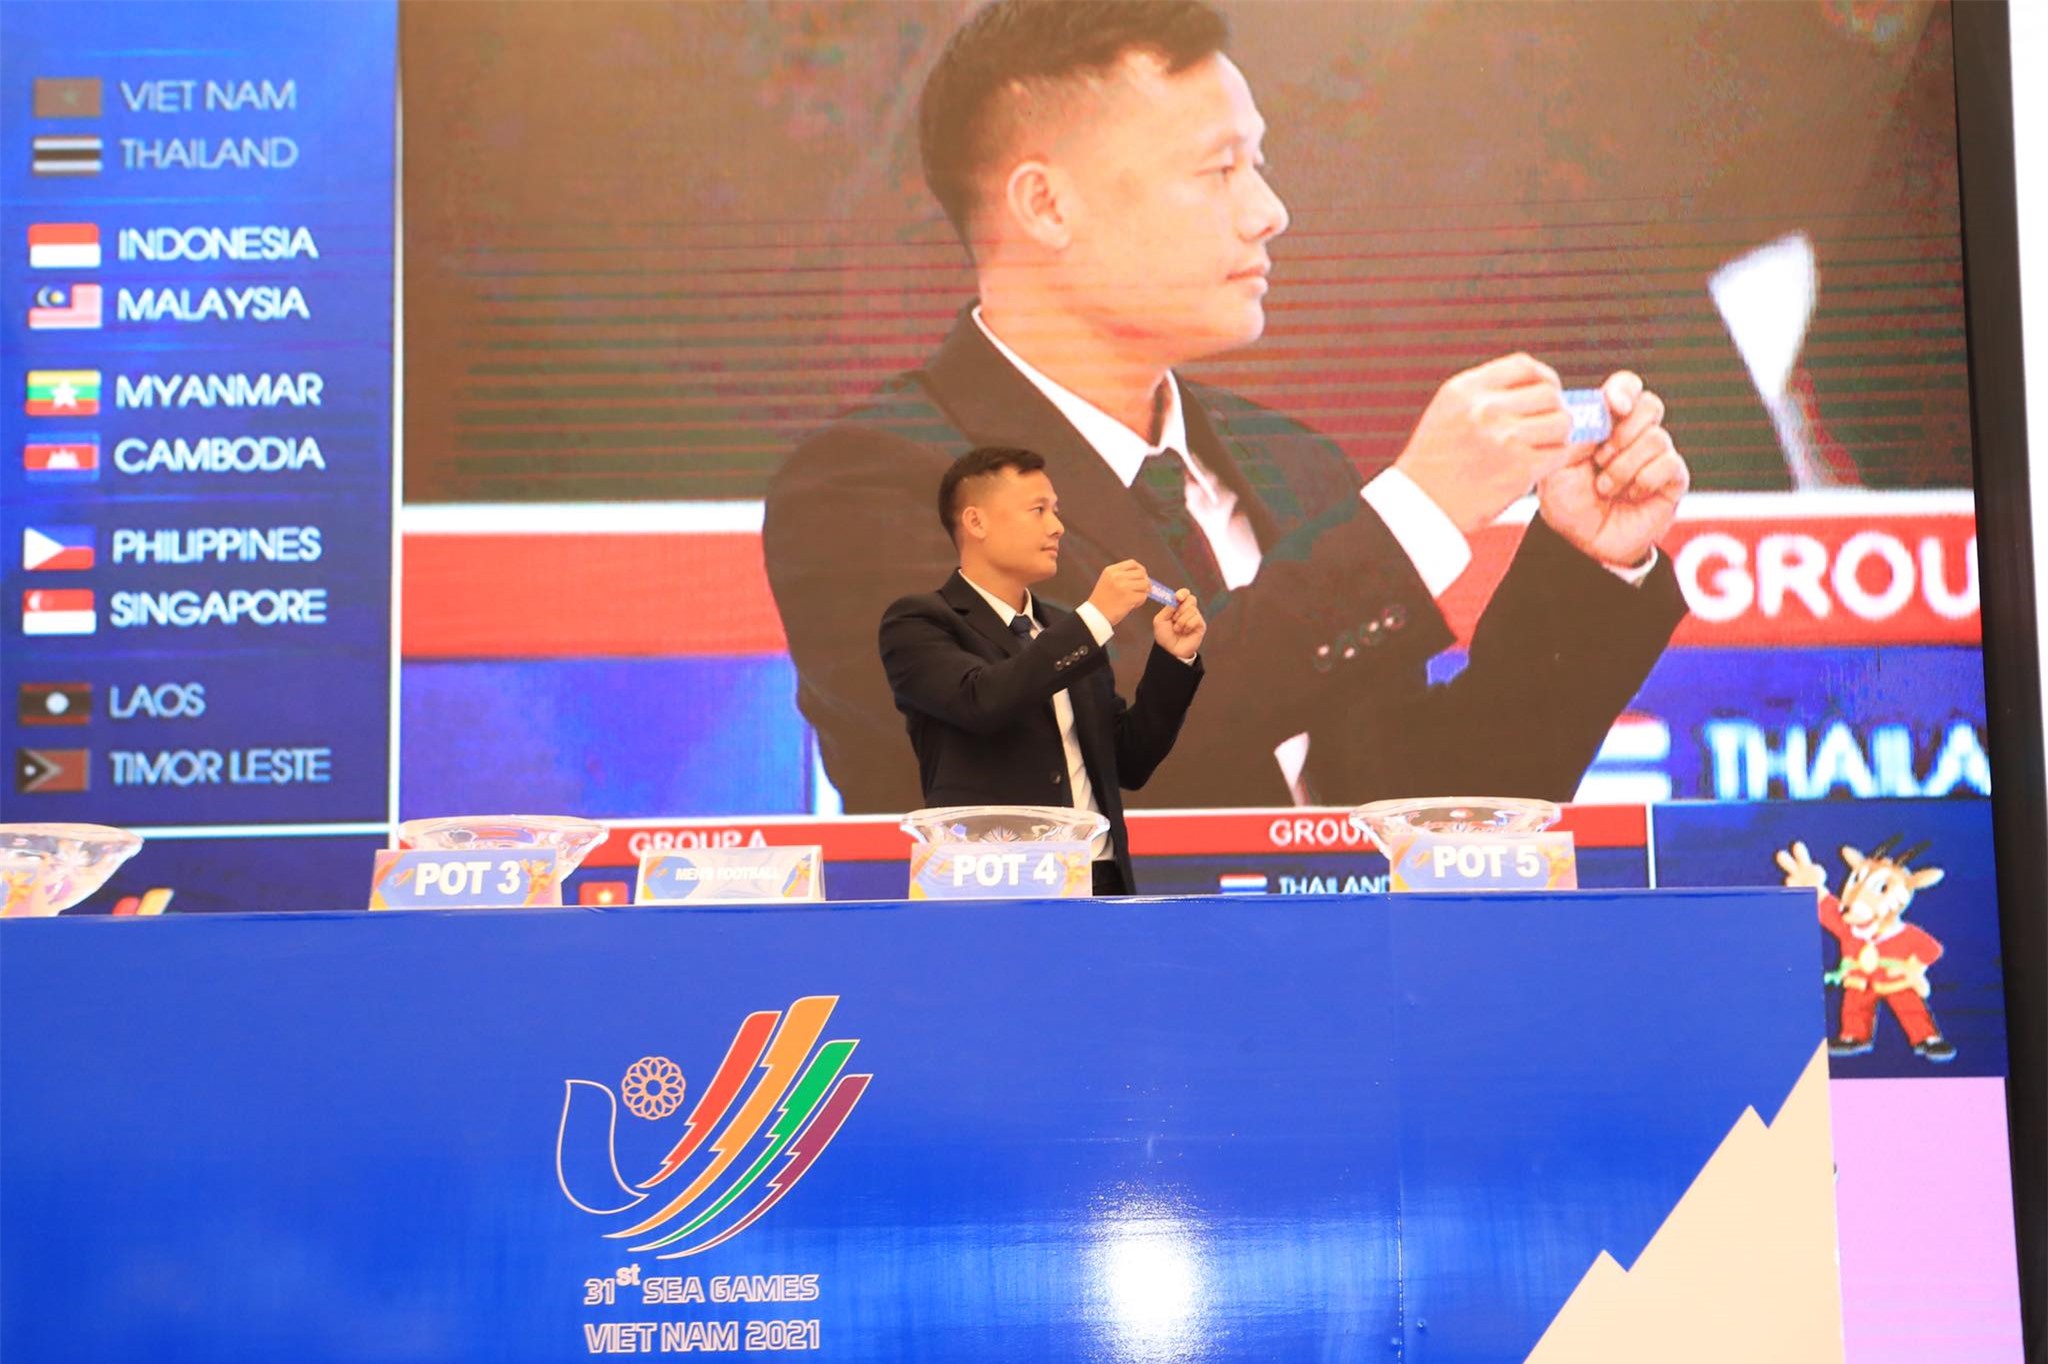 U23 Việt Nam nằm chung bảng A với Indonesia, Myanmar, Phillipines và Timor Leste - Ảnh: Phan Tùng 